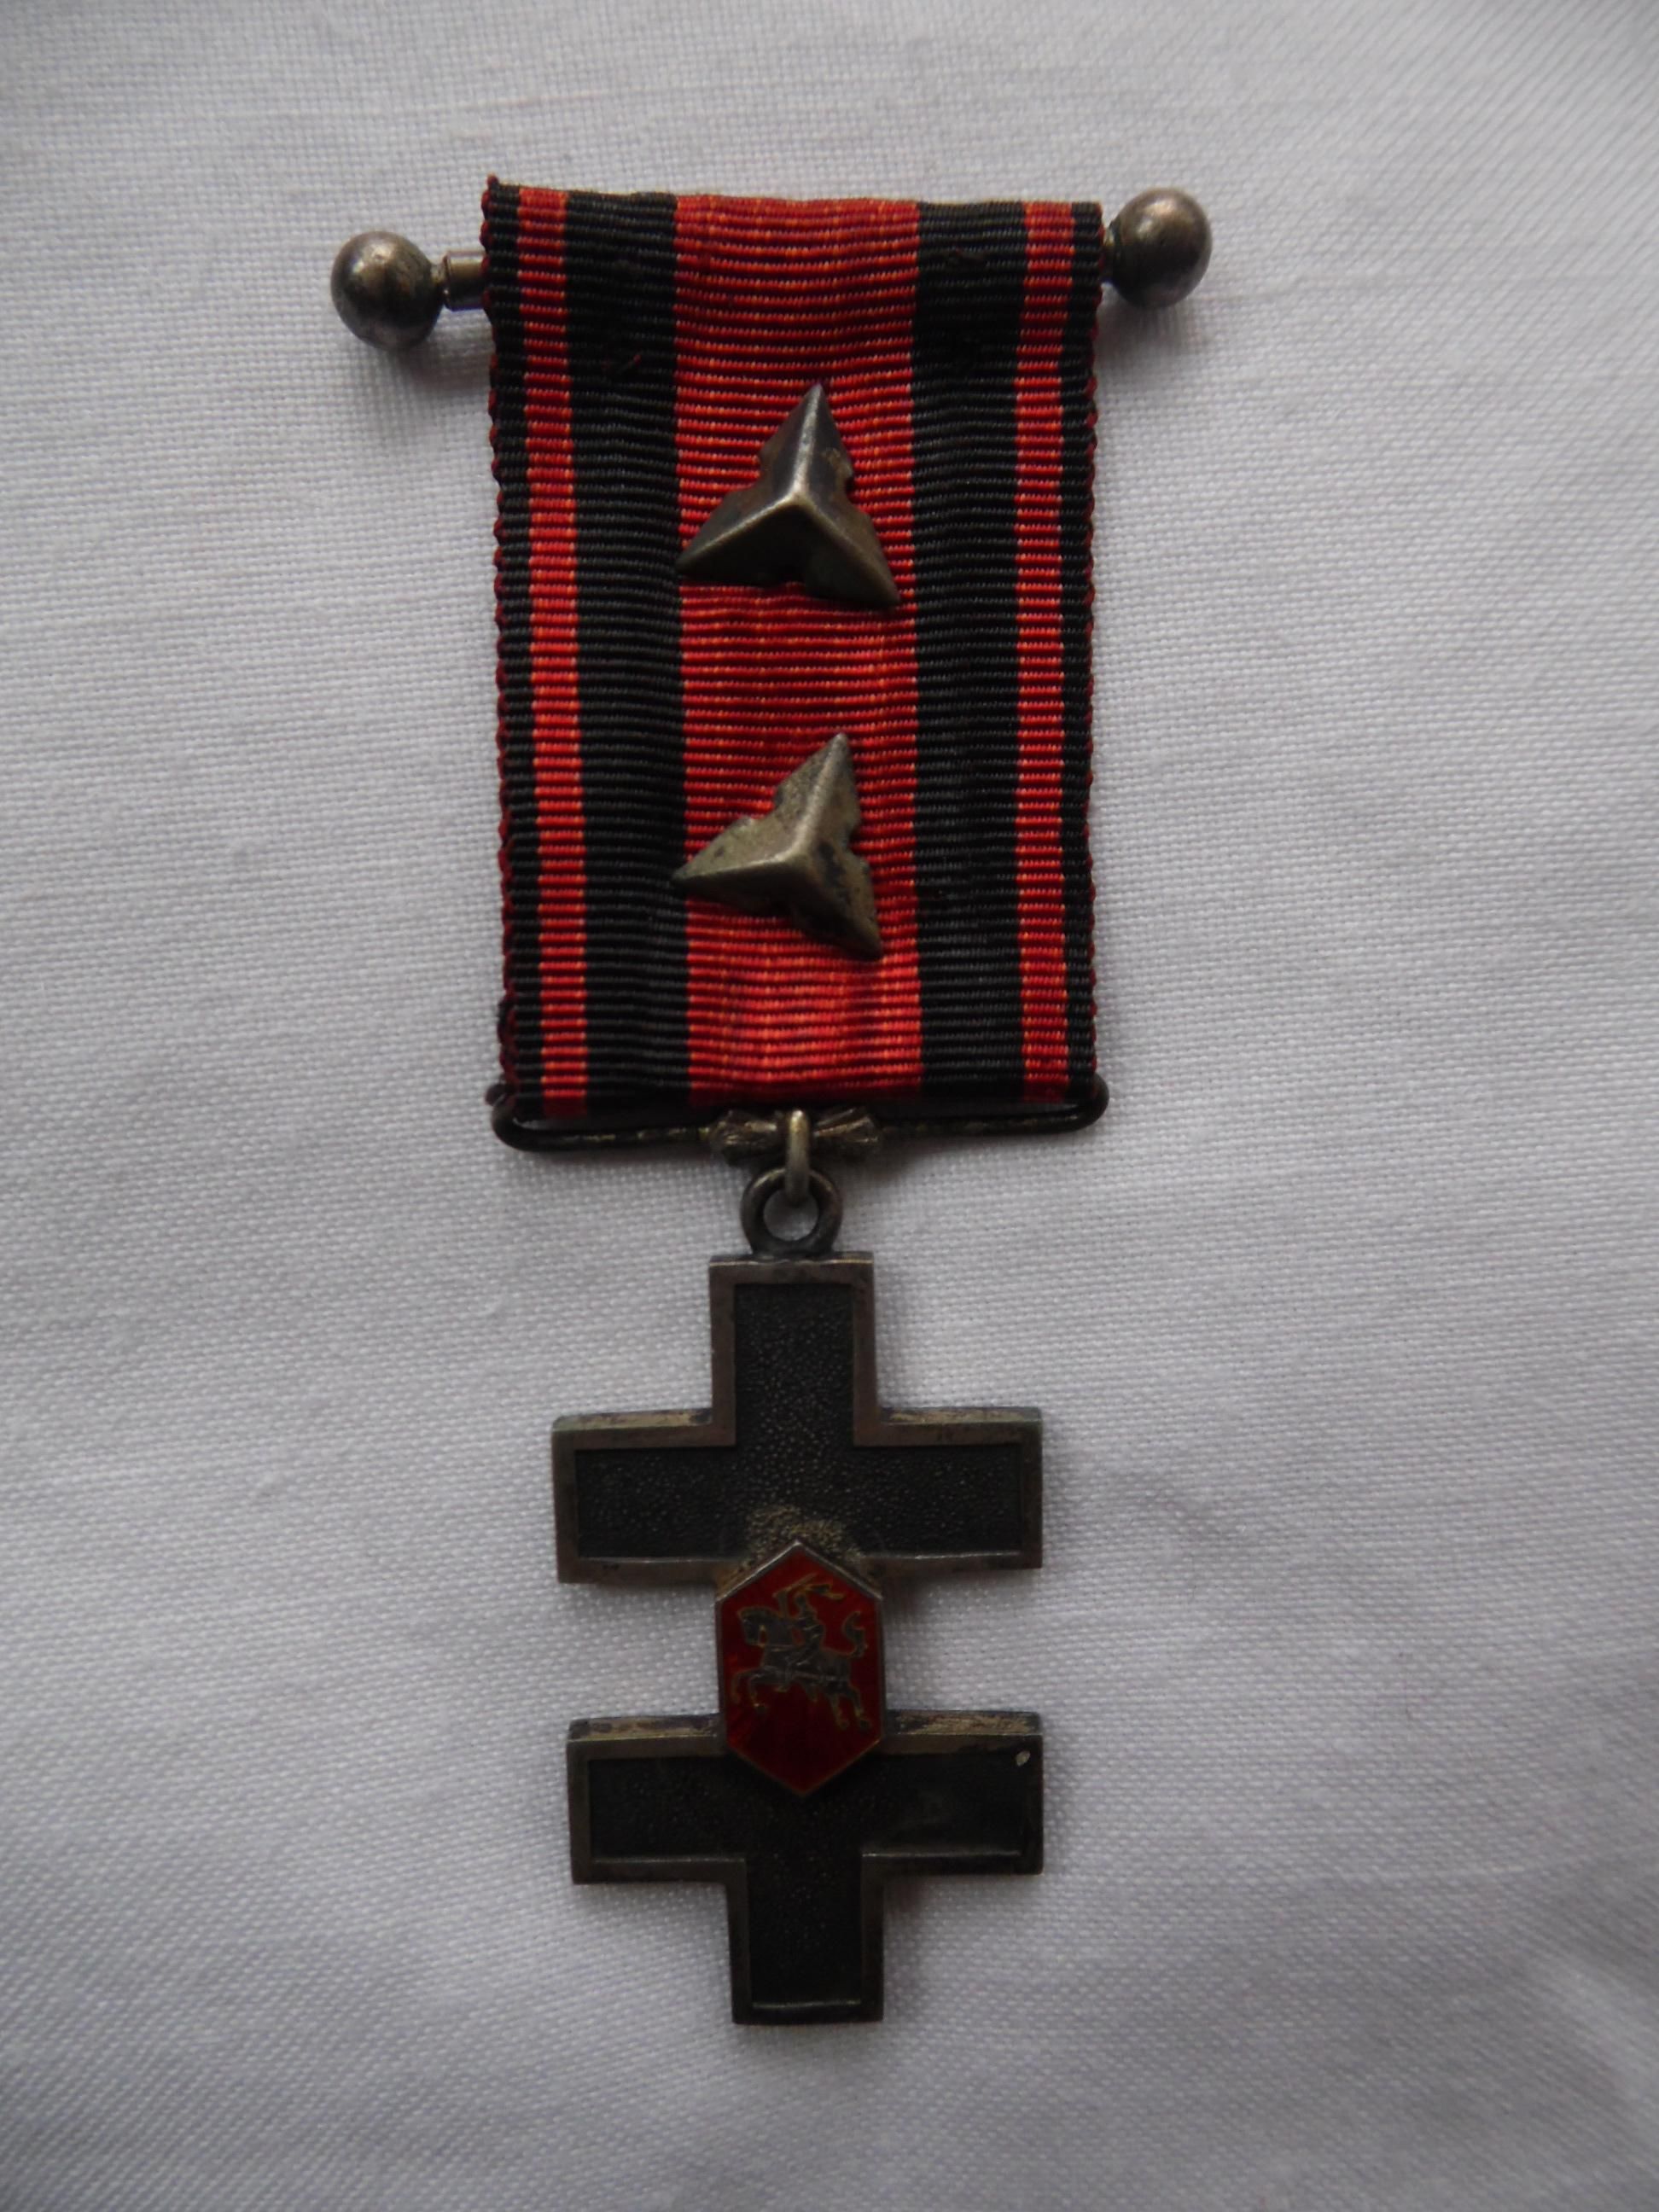 Крест Витиса 1925 года 2 класса, 2 степени, без мечей.На ленточке две звезды образца 1923 года. Из коллекции Г. Сакалаускаса